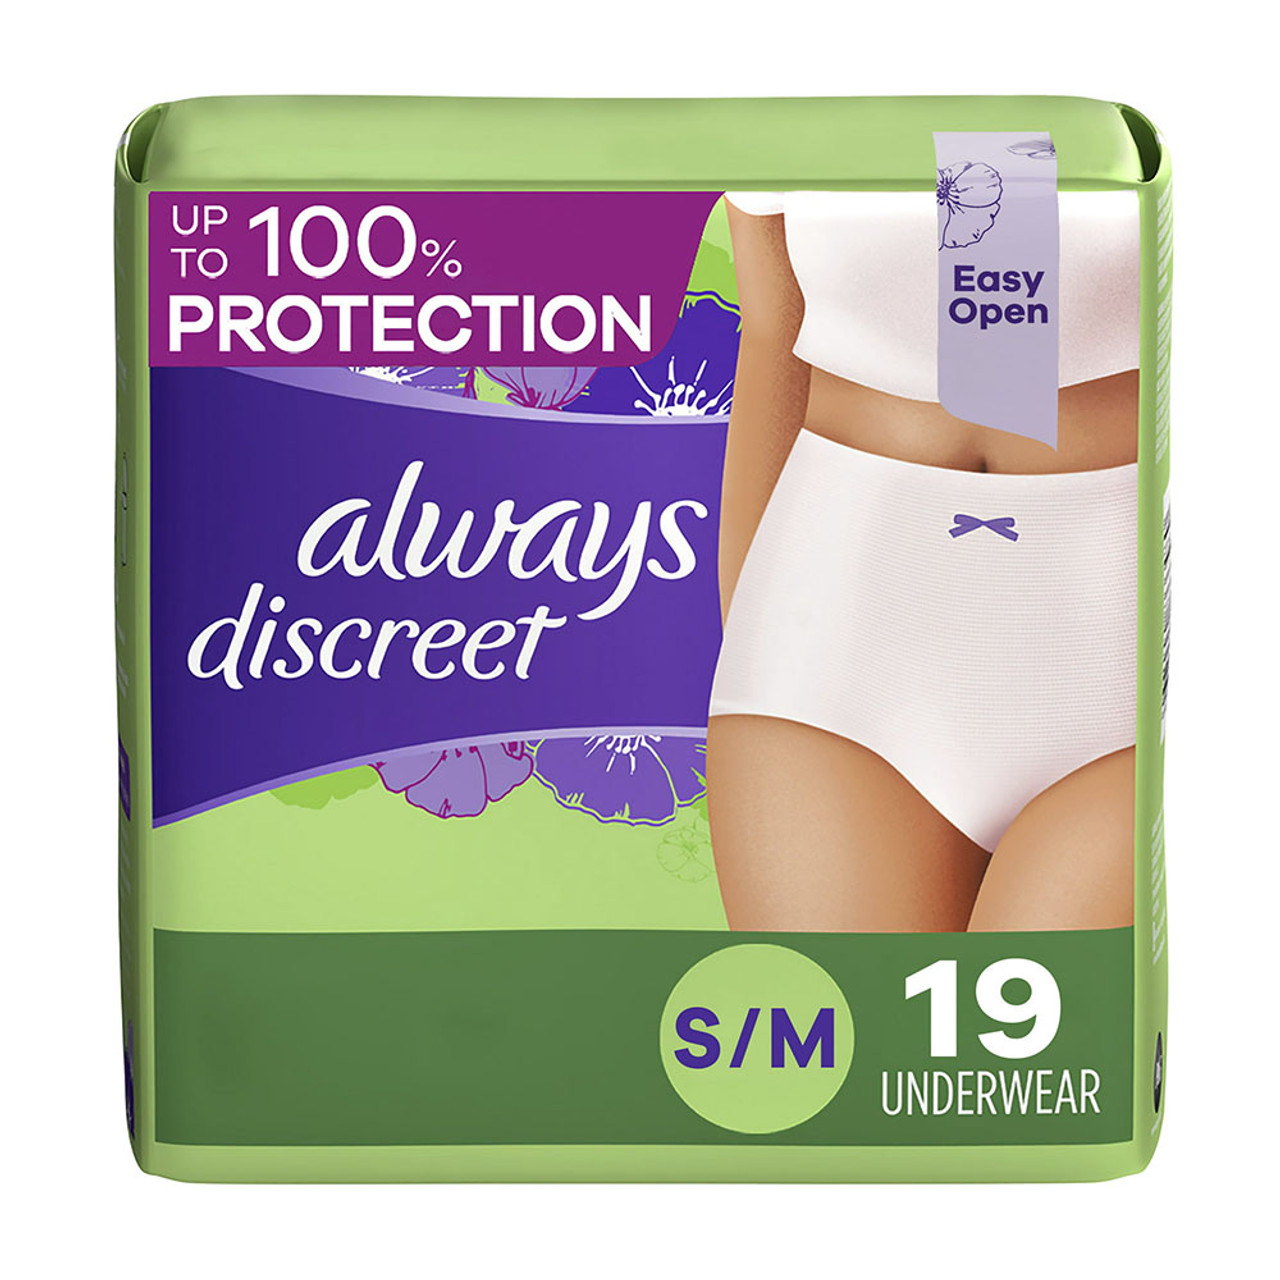 Depend Fit-Flex Incontinence & Postpartum Underwear for Women